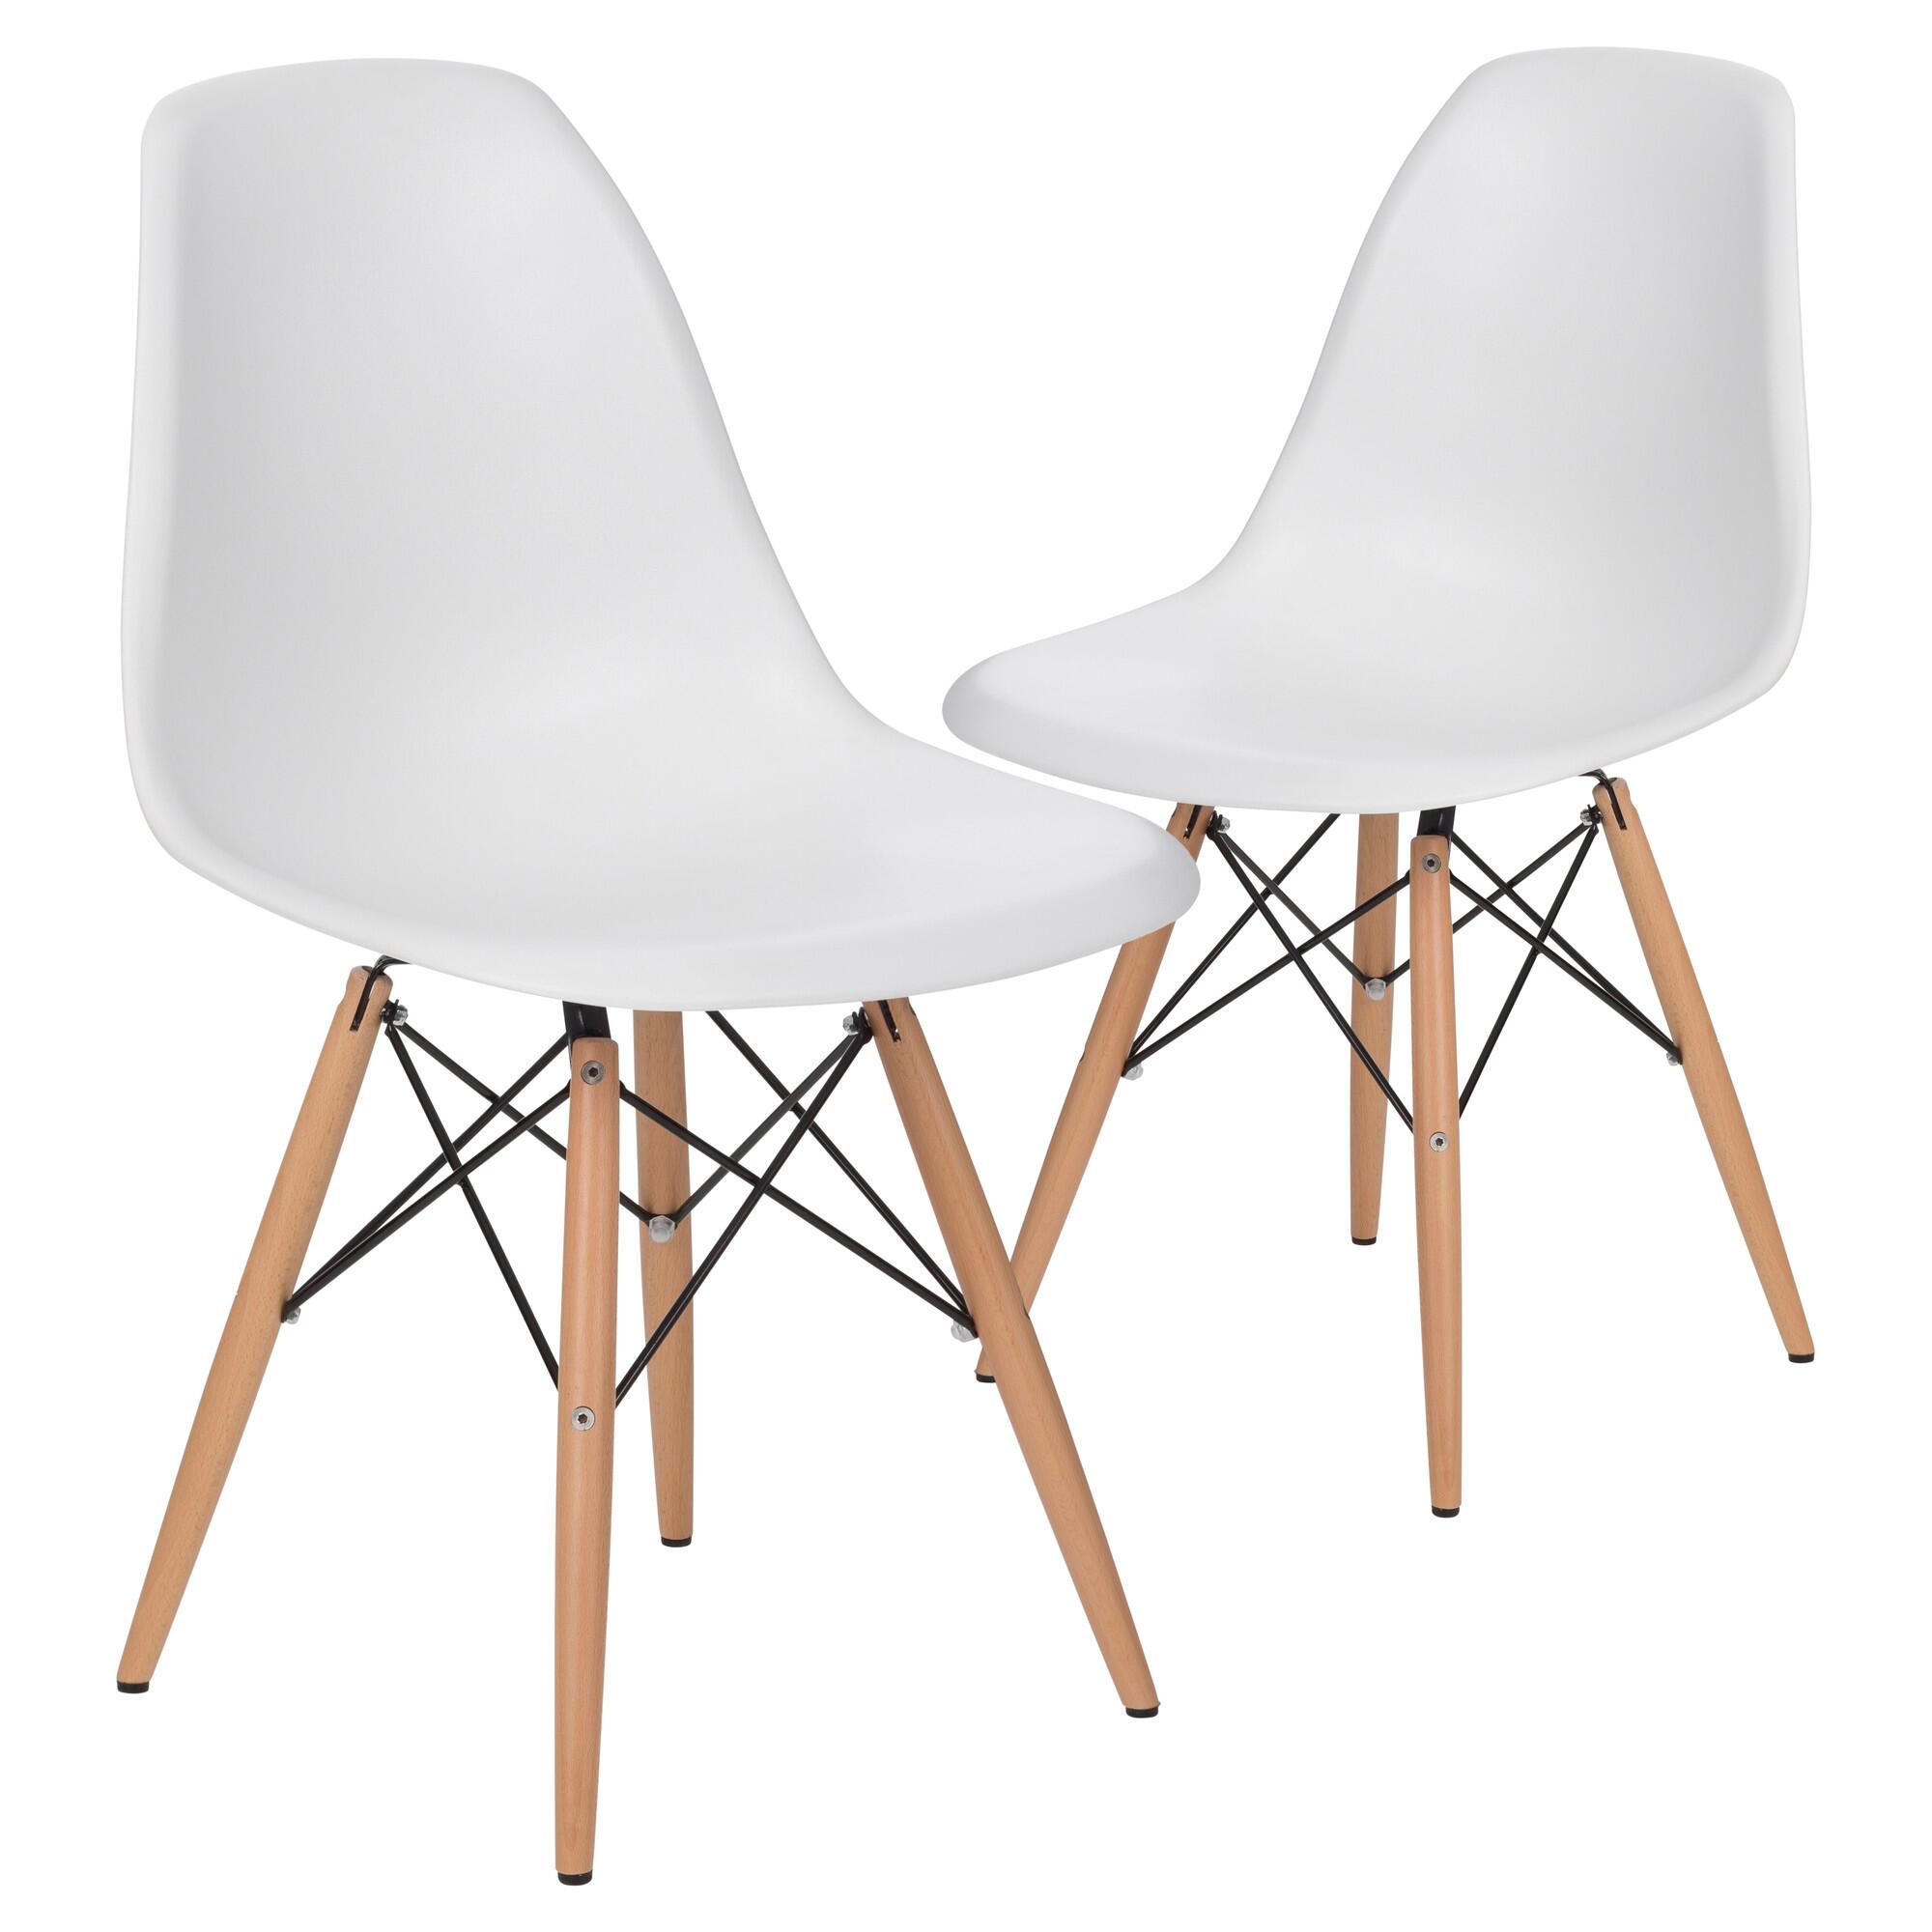 https://fenstt.com/wp-content/uploads/2022/11/Eames-chair-white.jpg